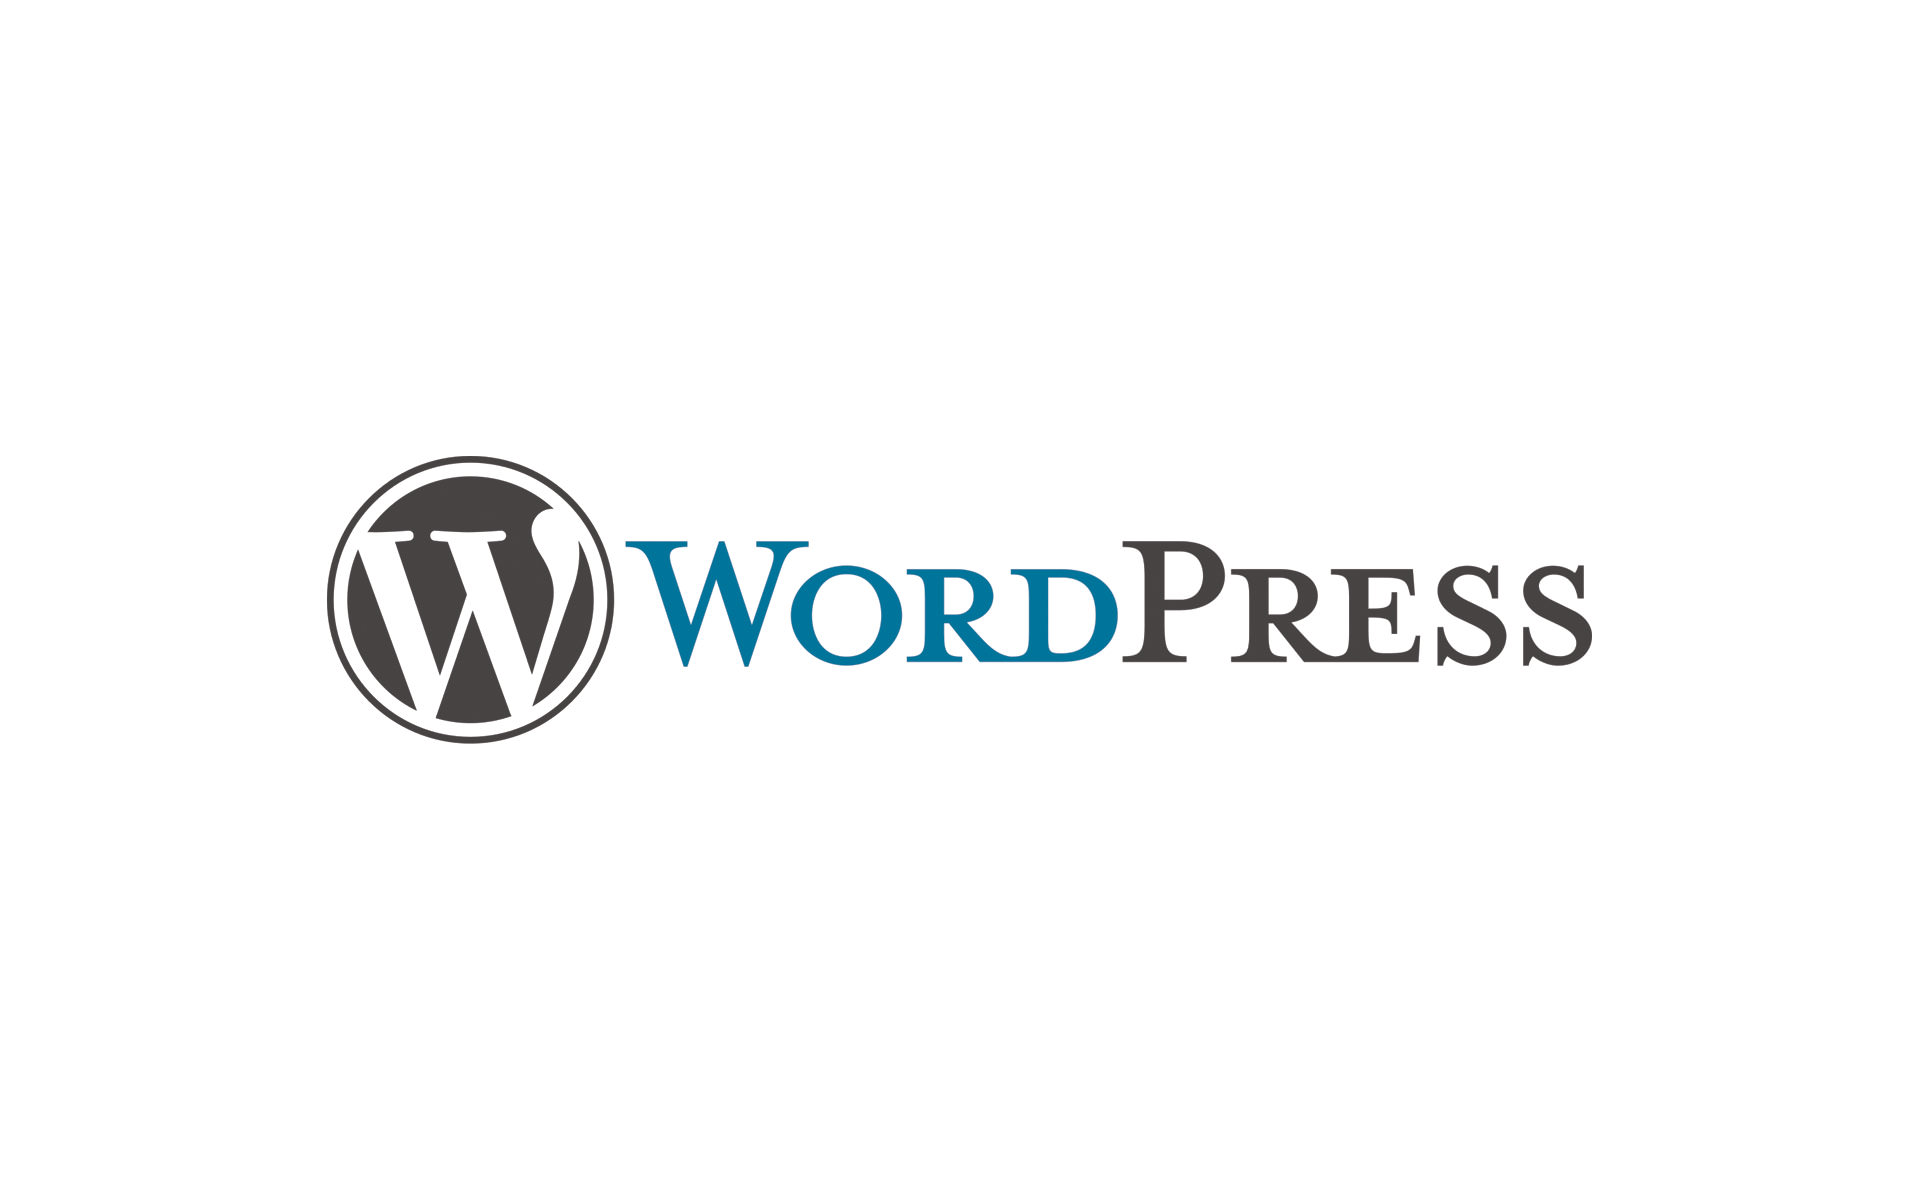 Image: Wordpress logo